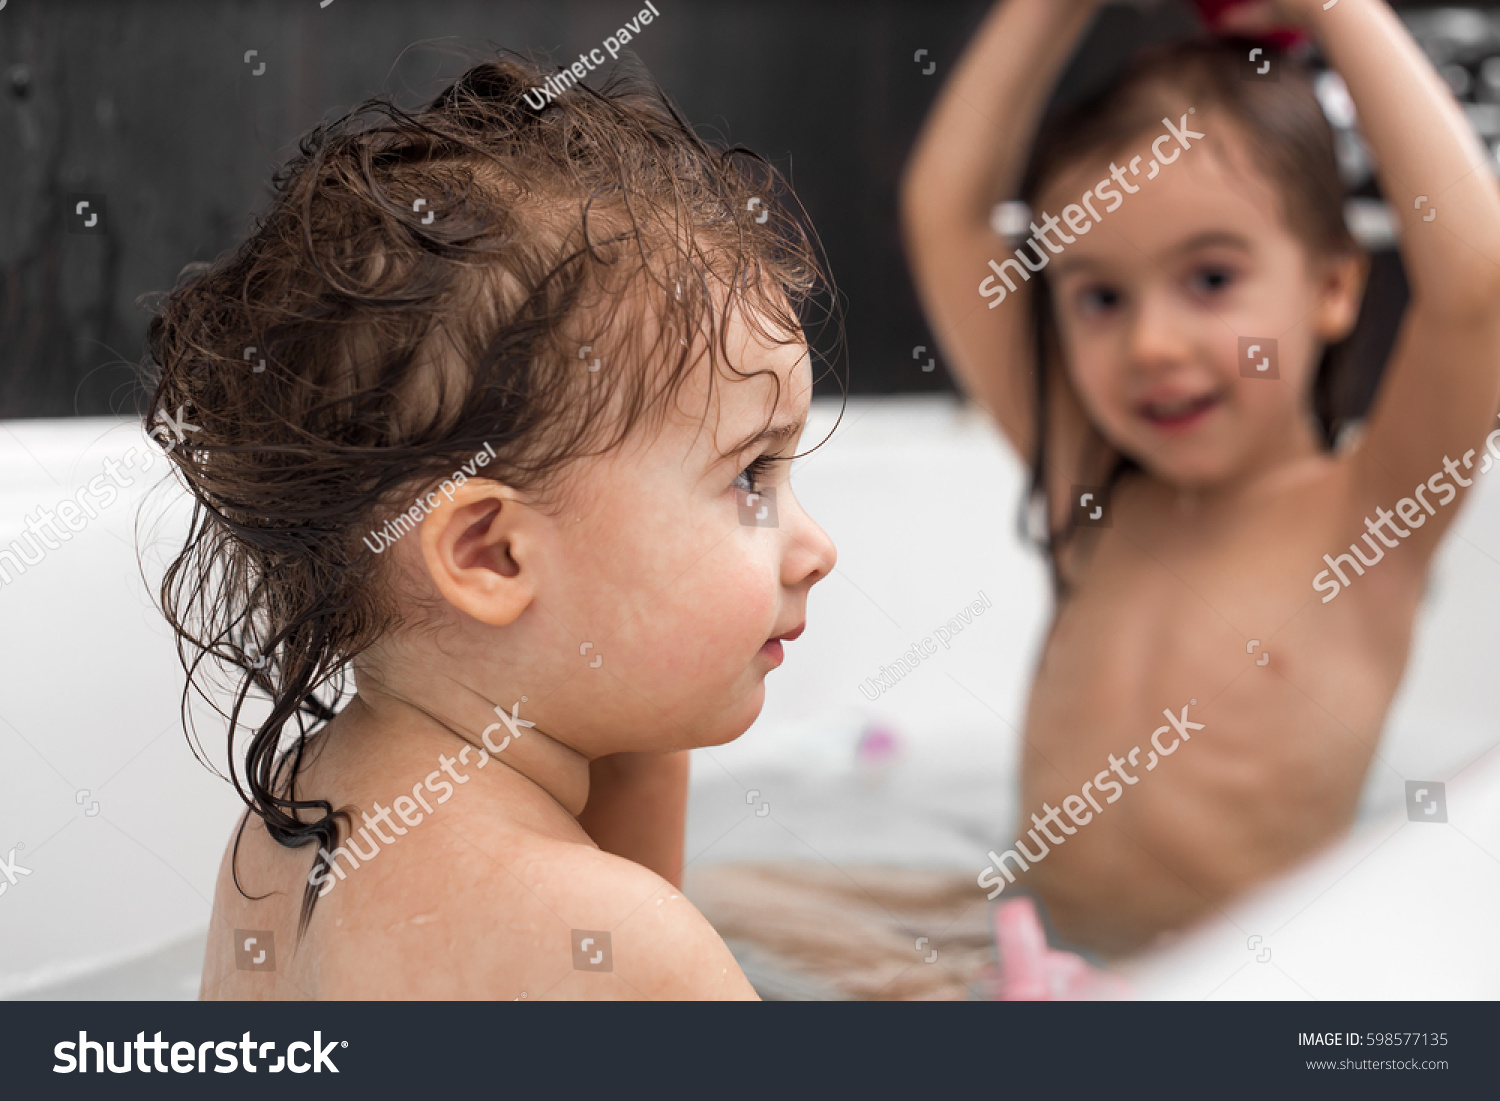 Cutie Girls Bath